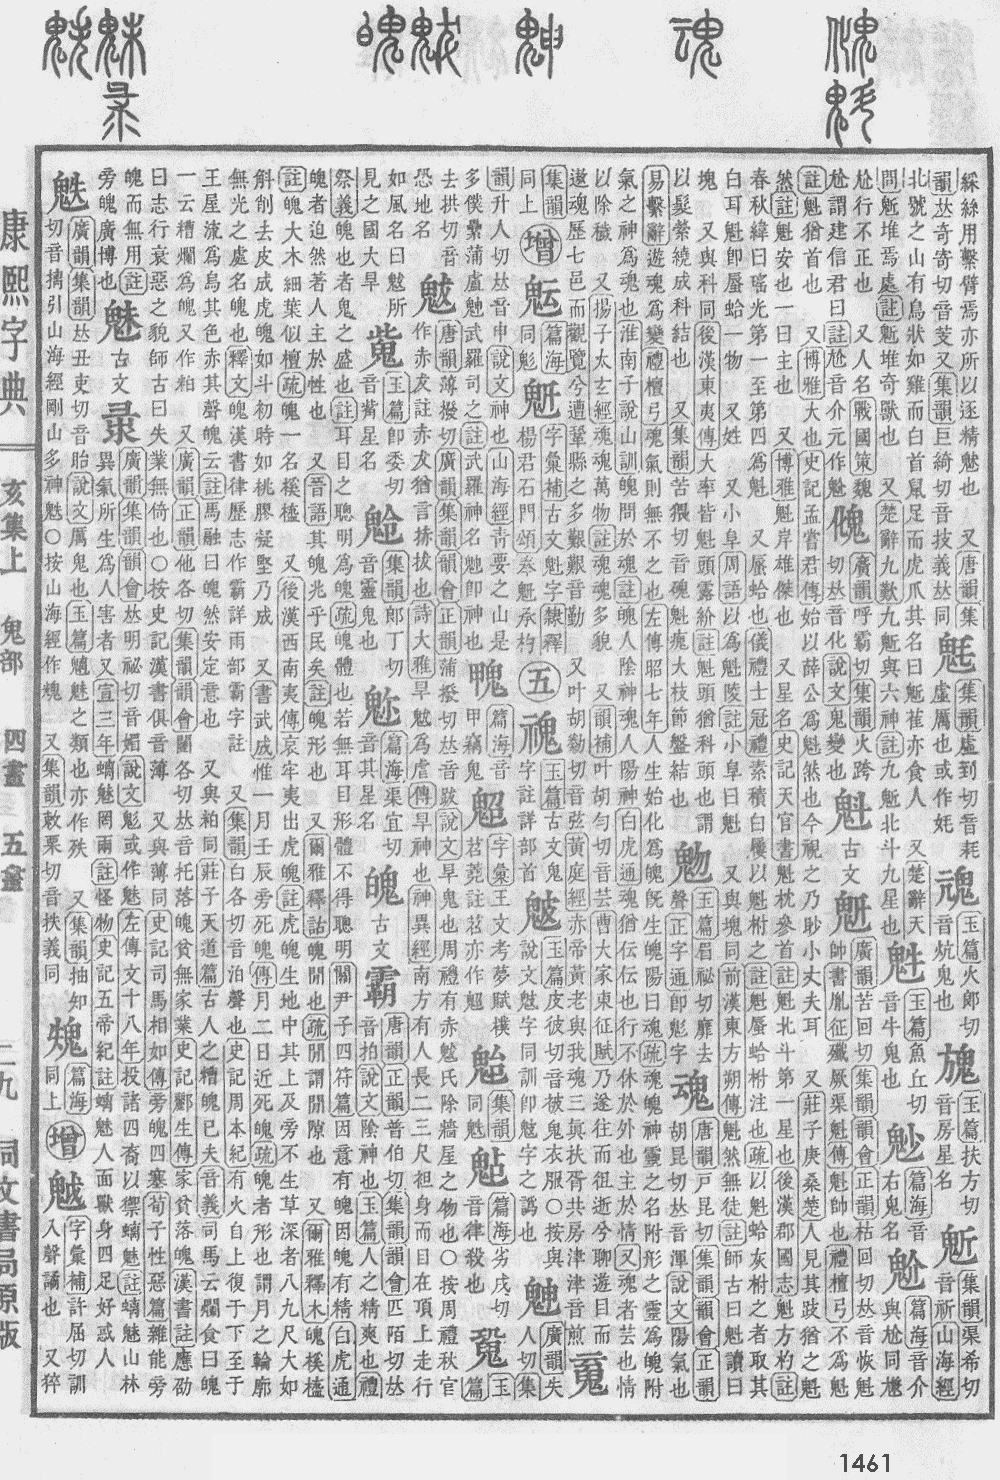 康熙字典第1461页图片